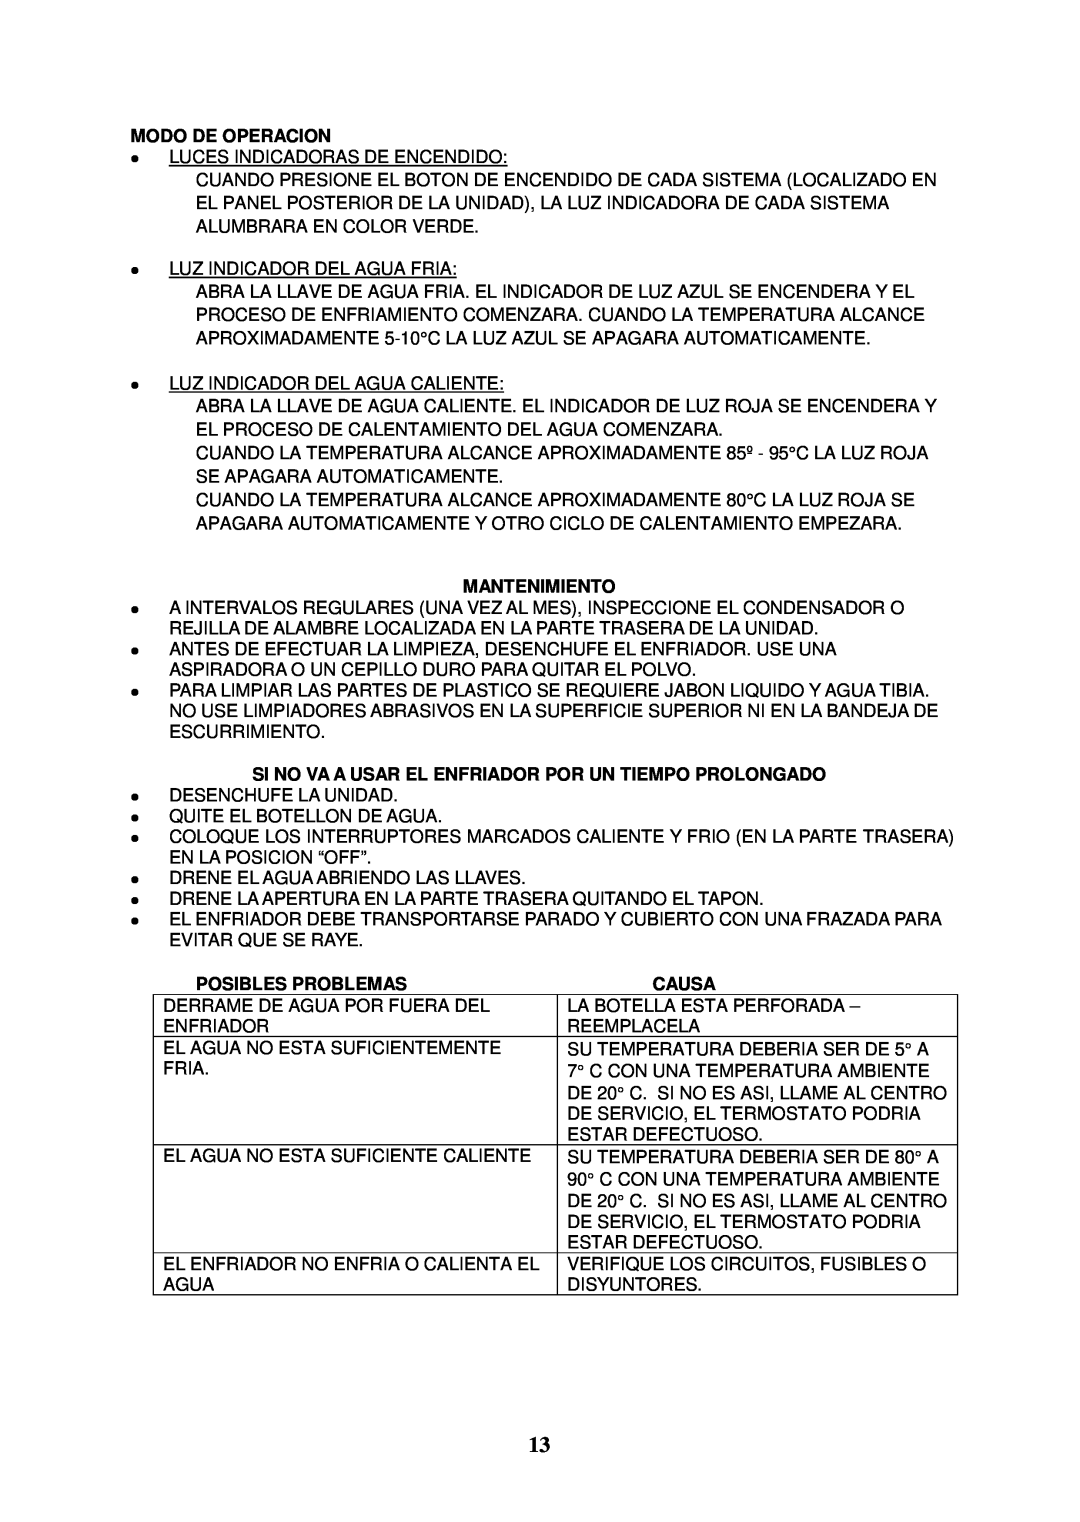 Avanti WDC750WIH instruction manual Modo De Operacion, Mantenimiento, Posibles Problemas, Causa 